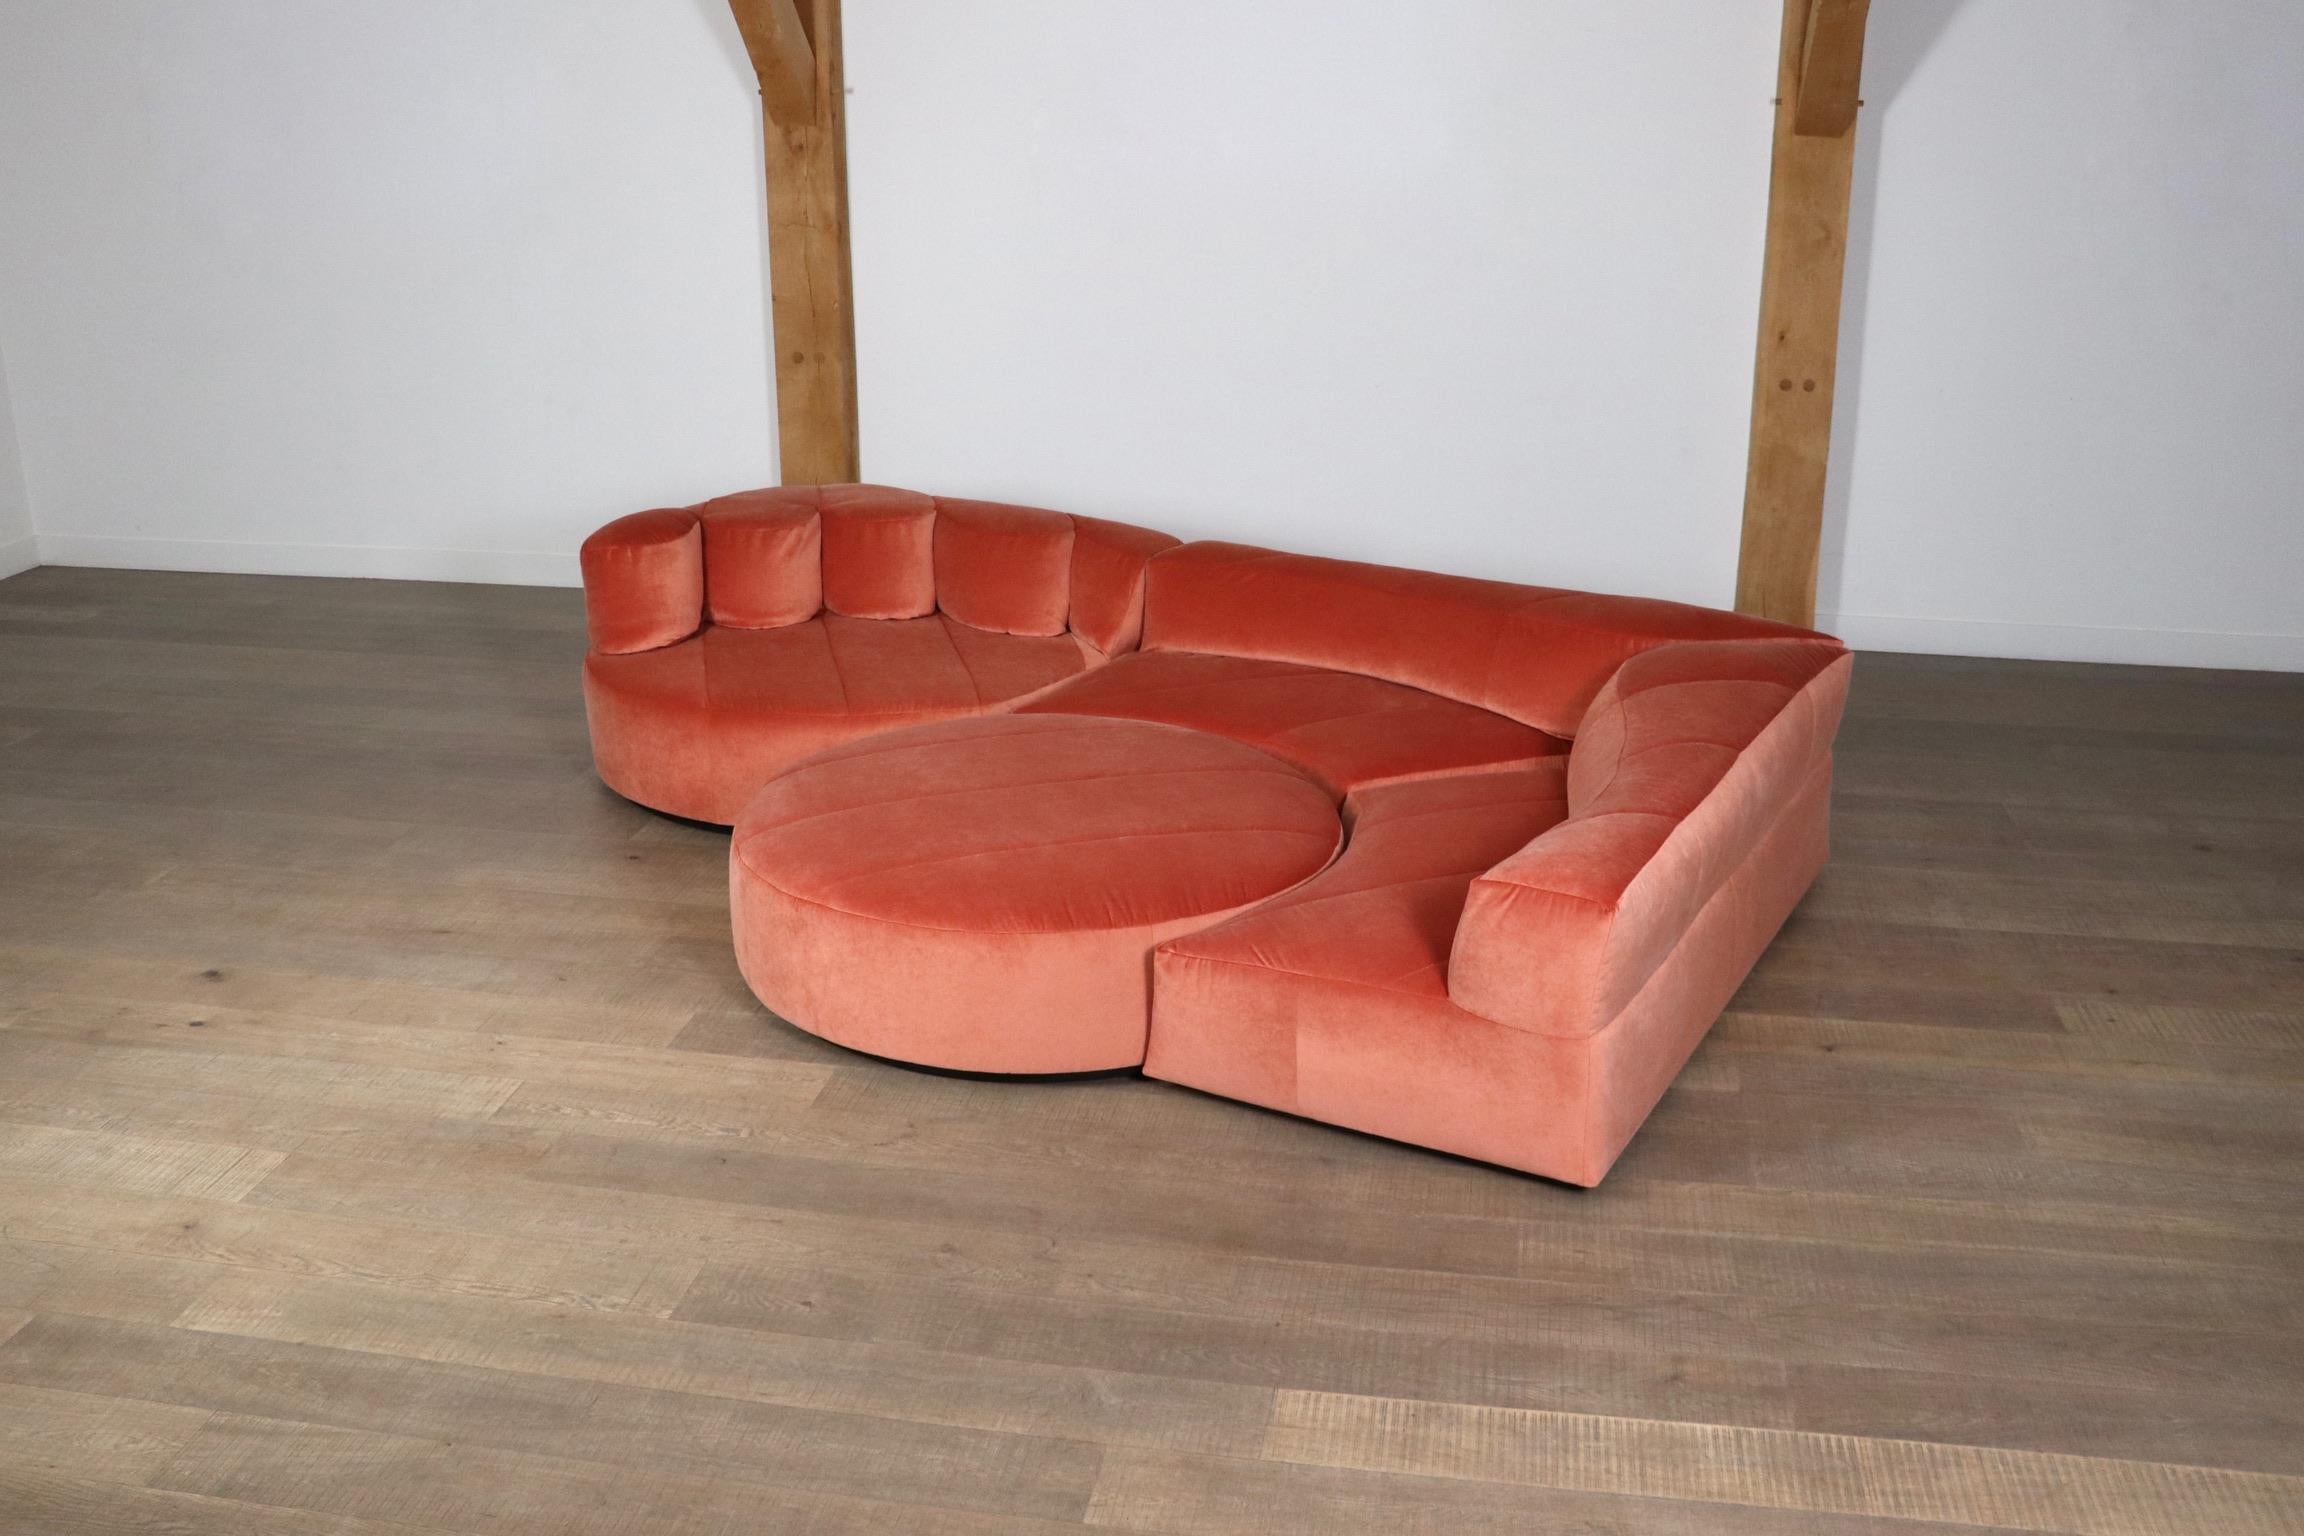 Roche Bobois “Paysage” Sofa In Coral Velvet By Hans Hopfer For Roche Bobois 1974 9